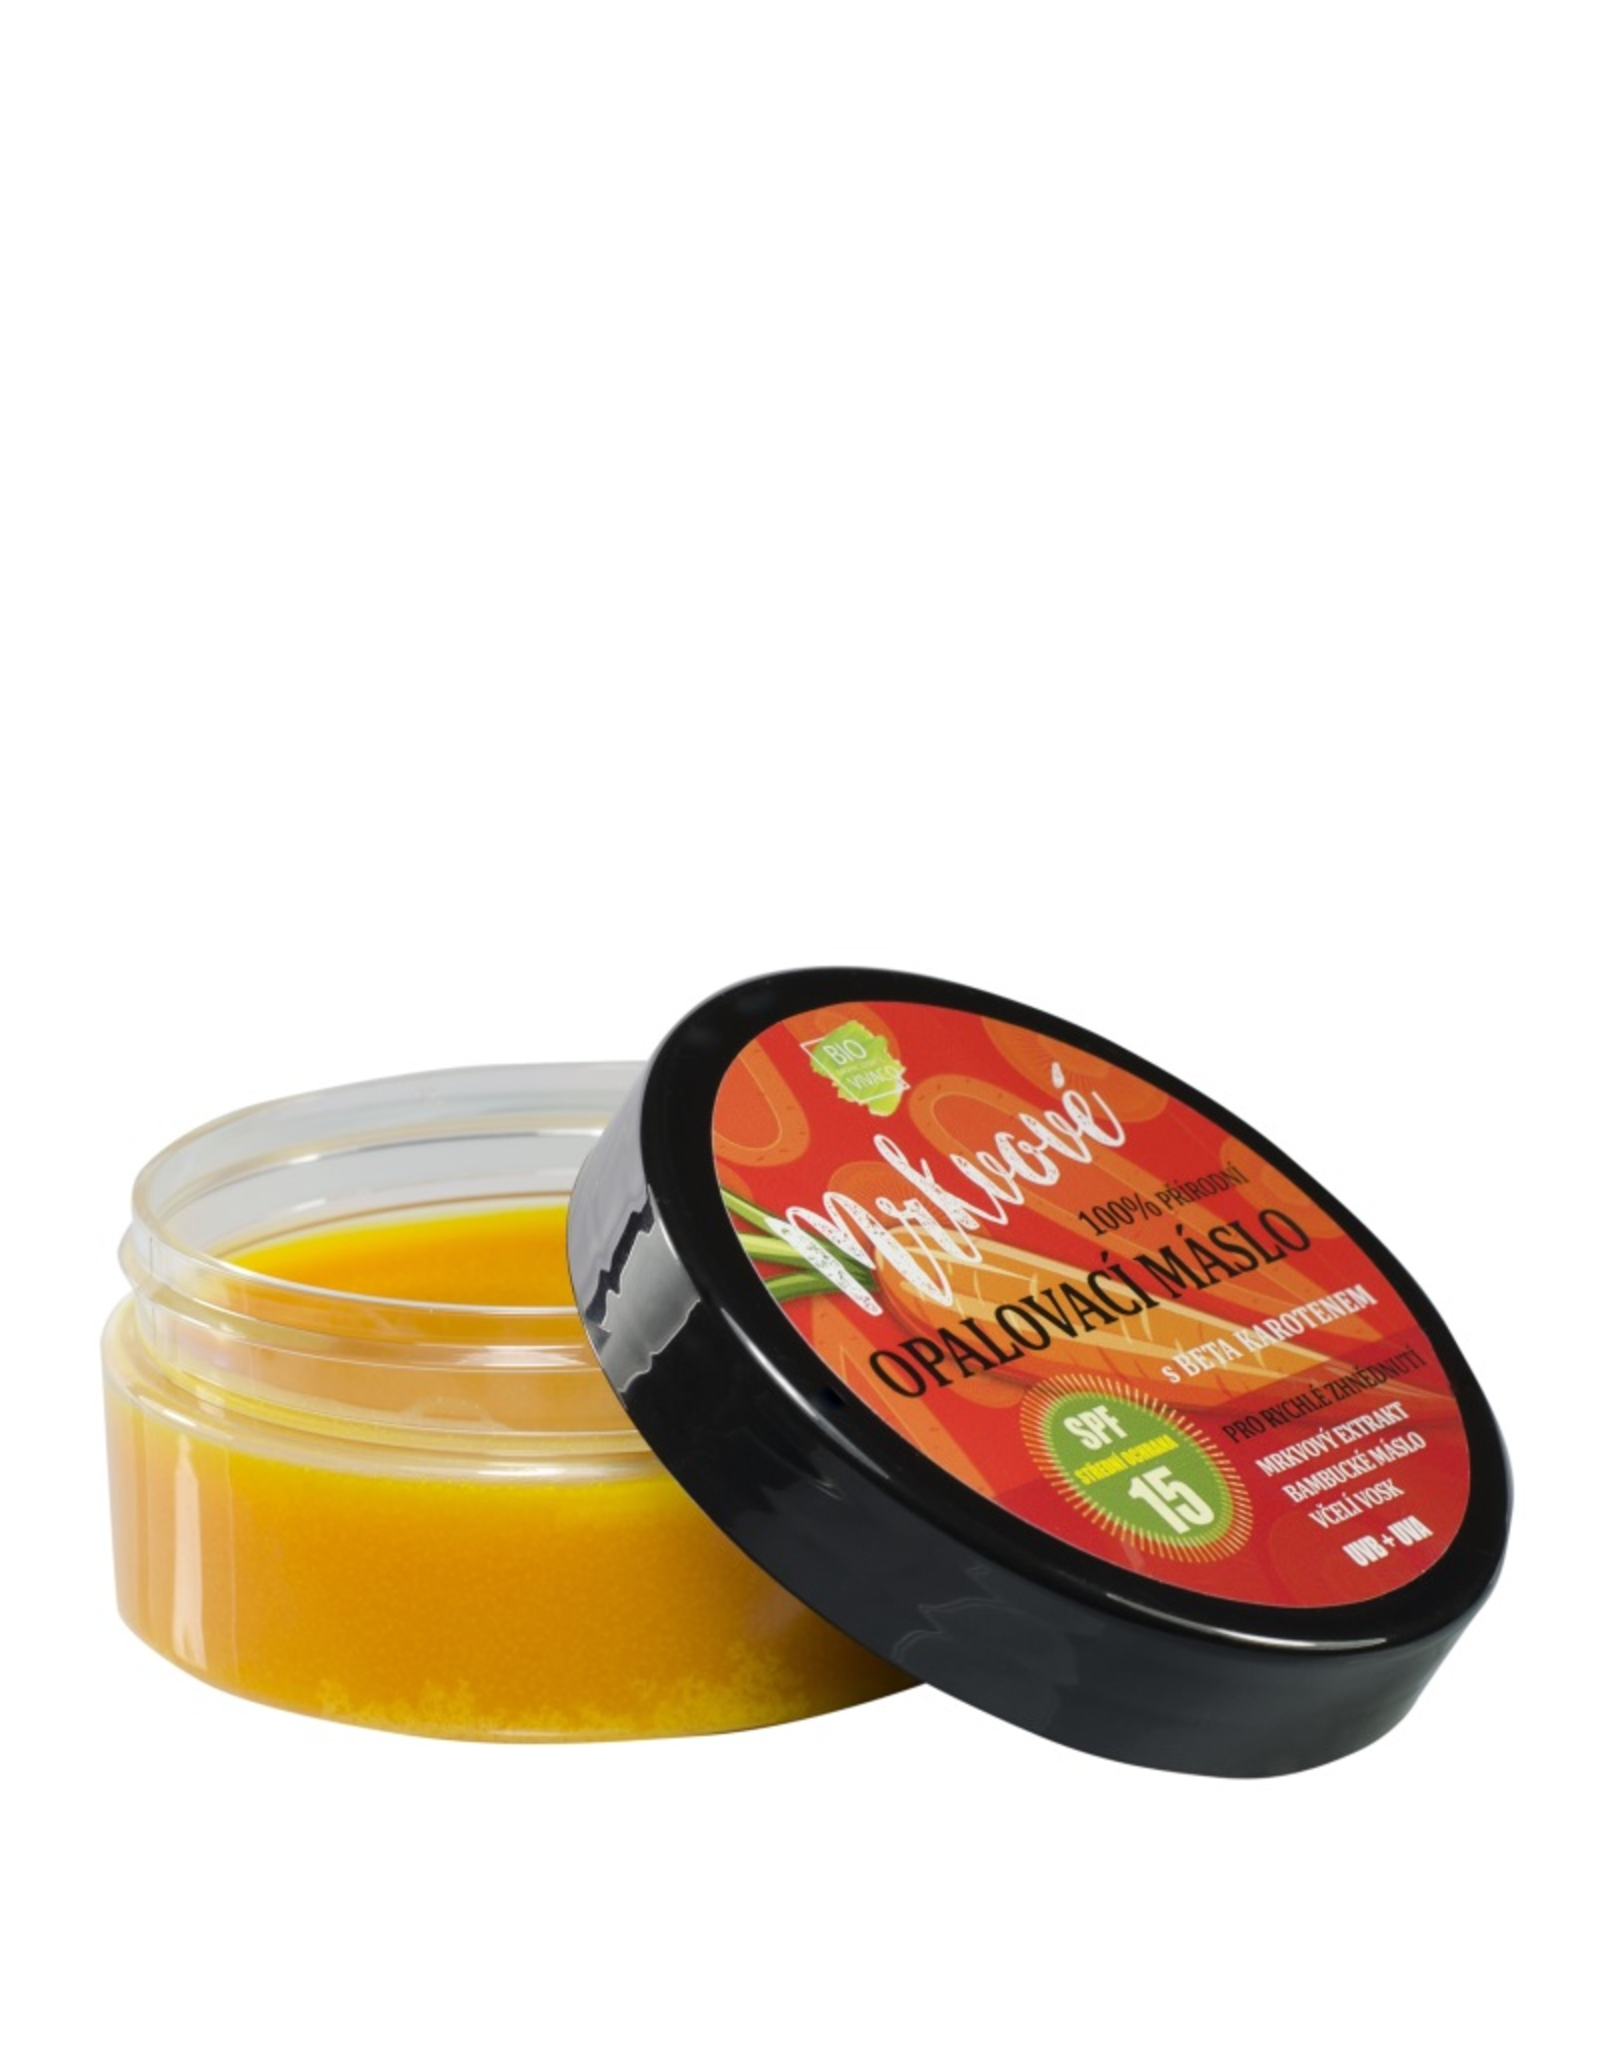 BIO VIVACO 100% Natuurlijke Zonnebrandcrème met Wortel Extract, Shea butter en Bijenwas, SPF15